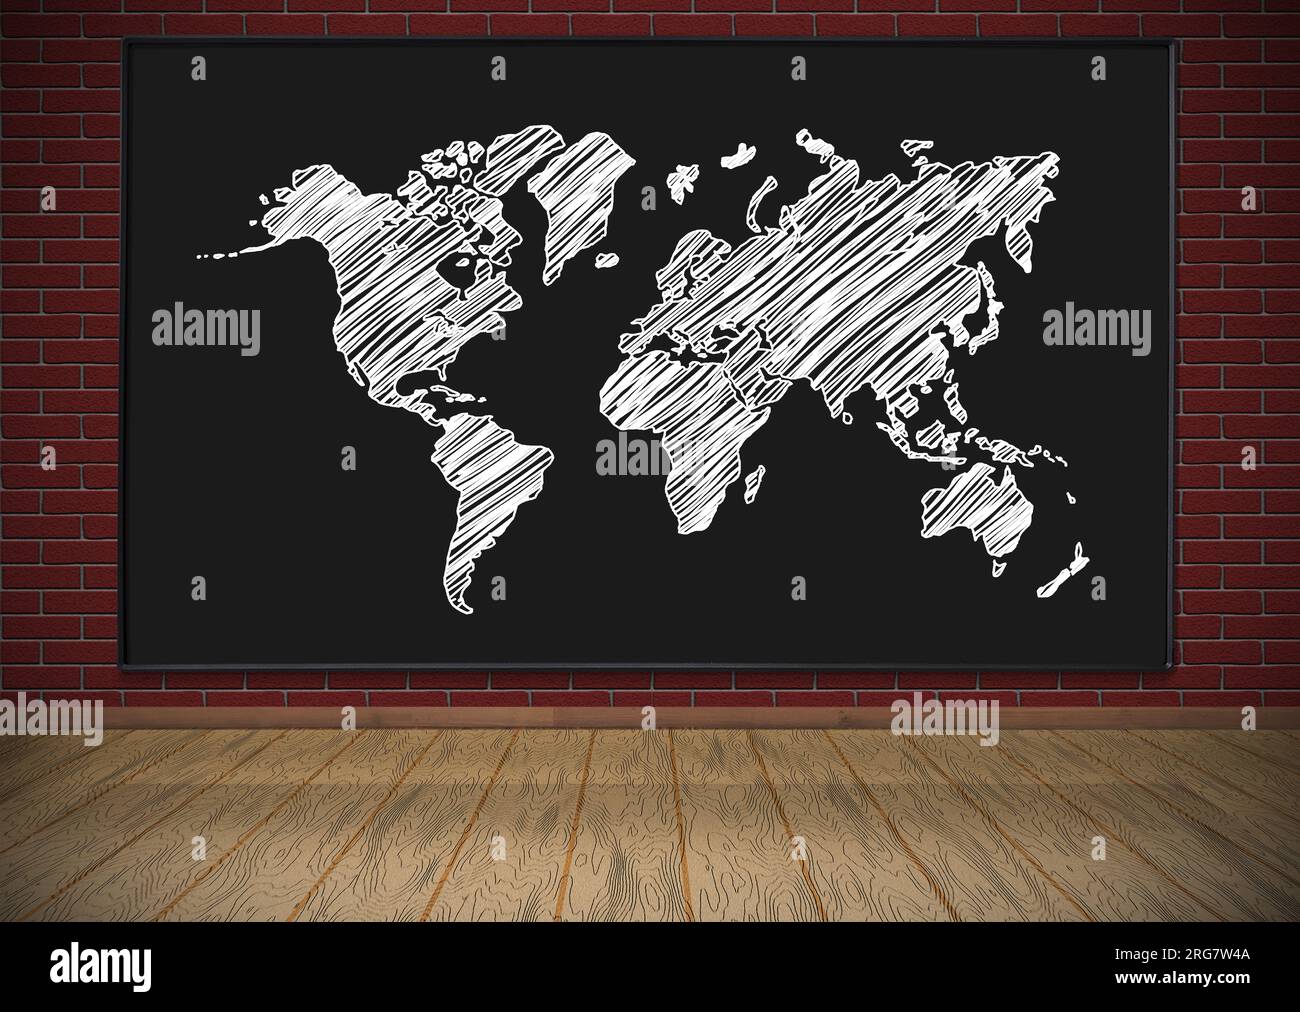 Tableau noir avec carte du monde dessin accroché sur mur de brique rouge Banque D'Images